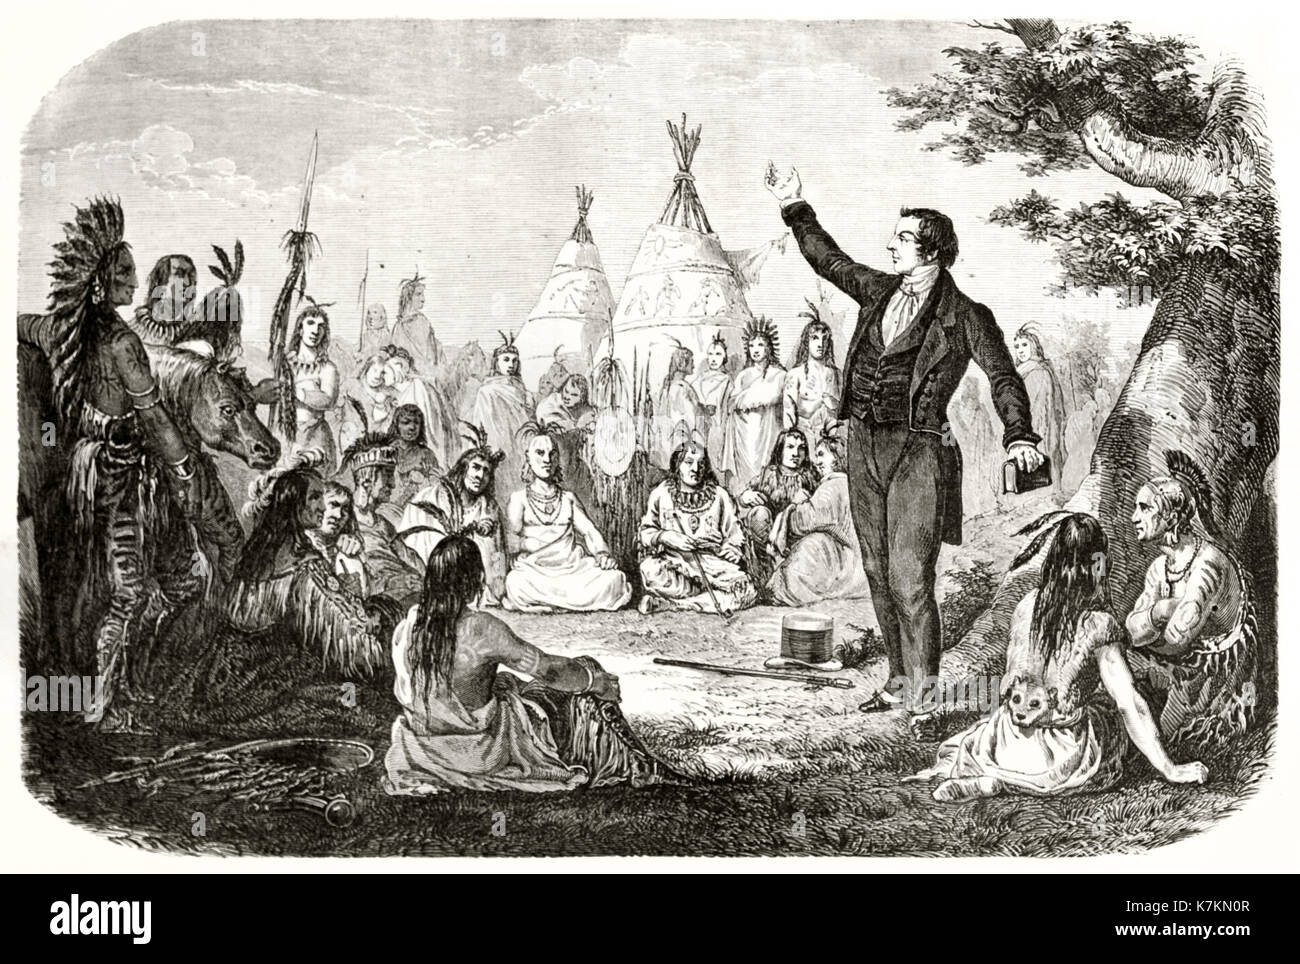 Old illustration depicting Joseph Smith, Mormonism founder, haranguing Indians. By Mettais, publ. on Le Tour du Monde, Paris, 1862 Stock Photo